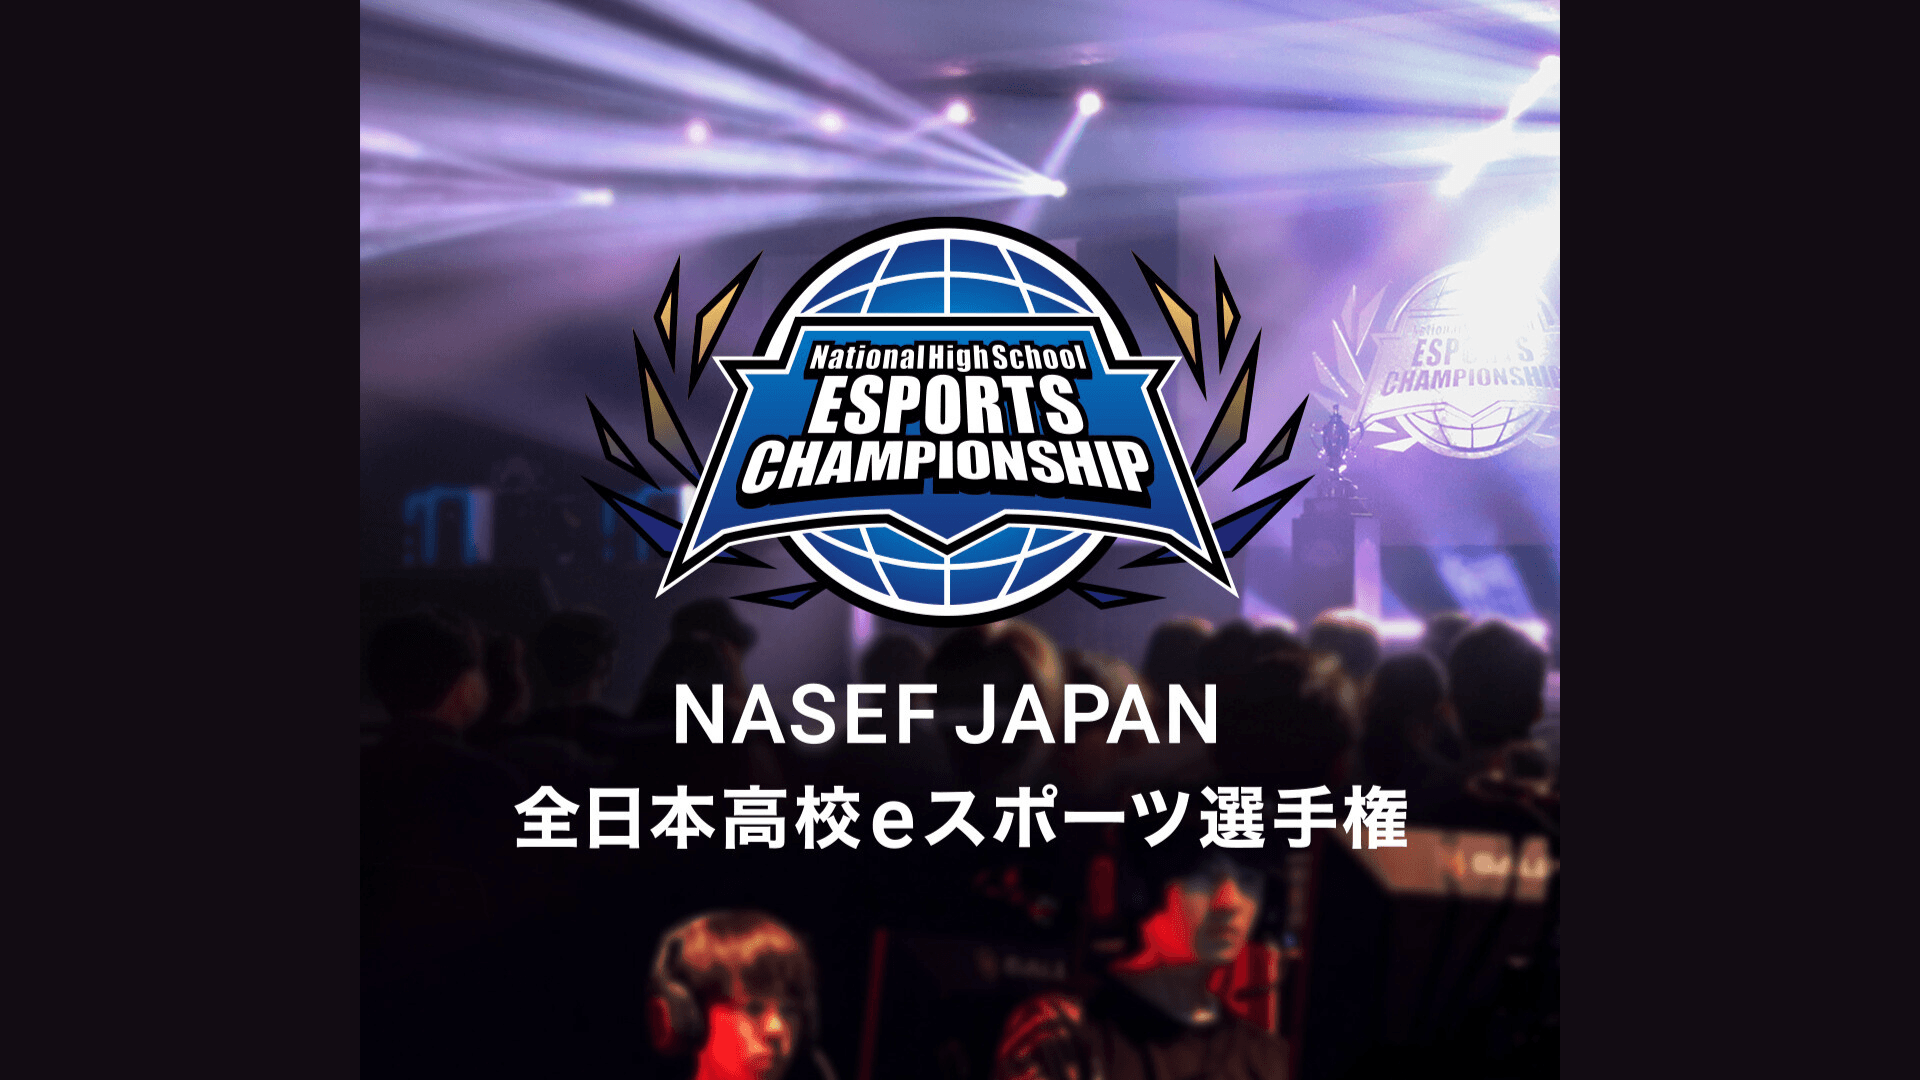 第2回 NASEF JAPAN 全日本高校eスポーツ選手権の見出し画像